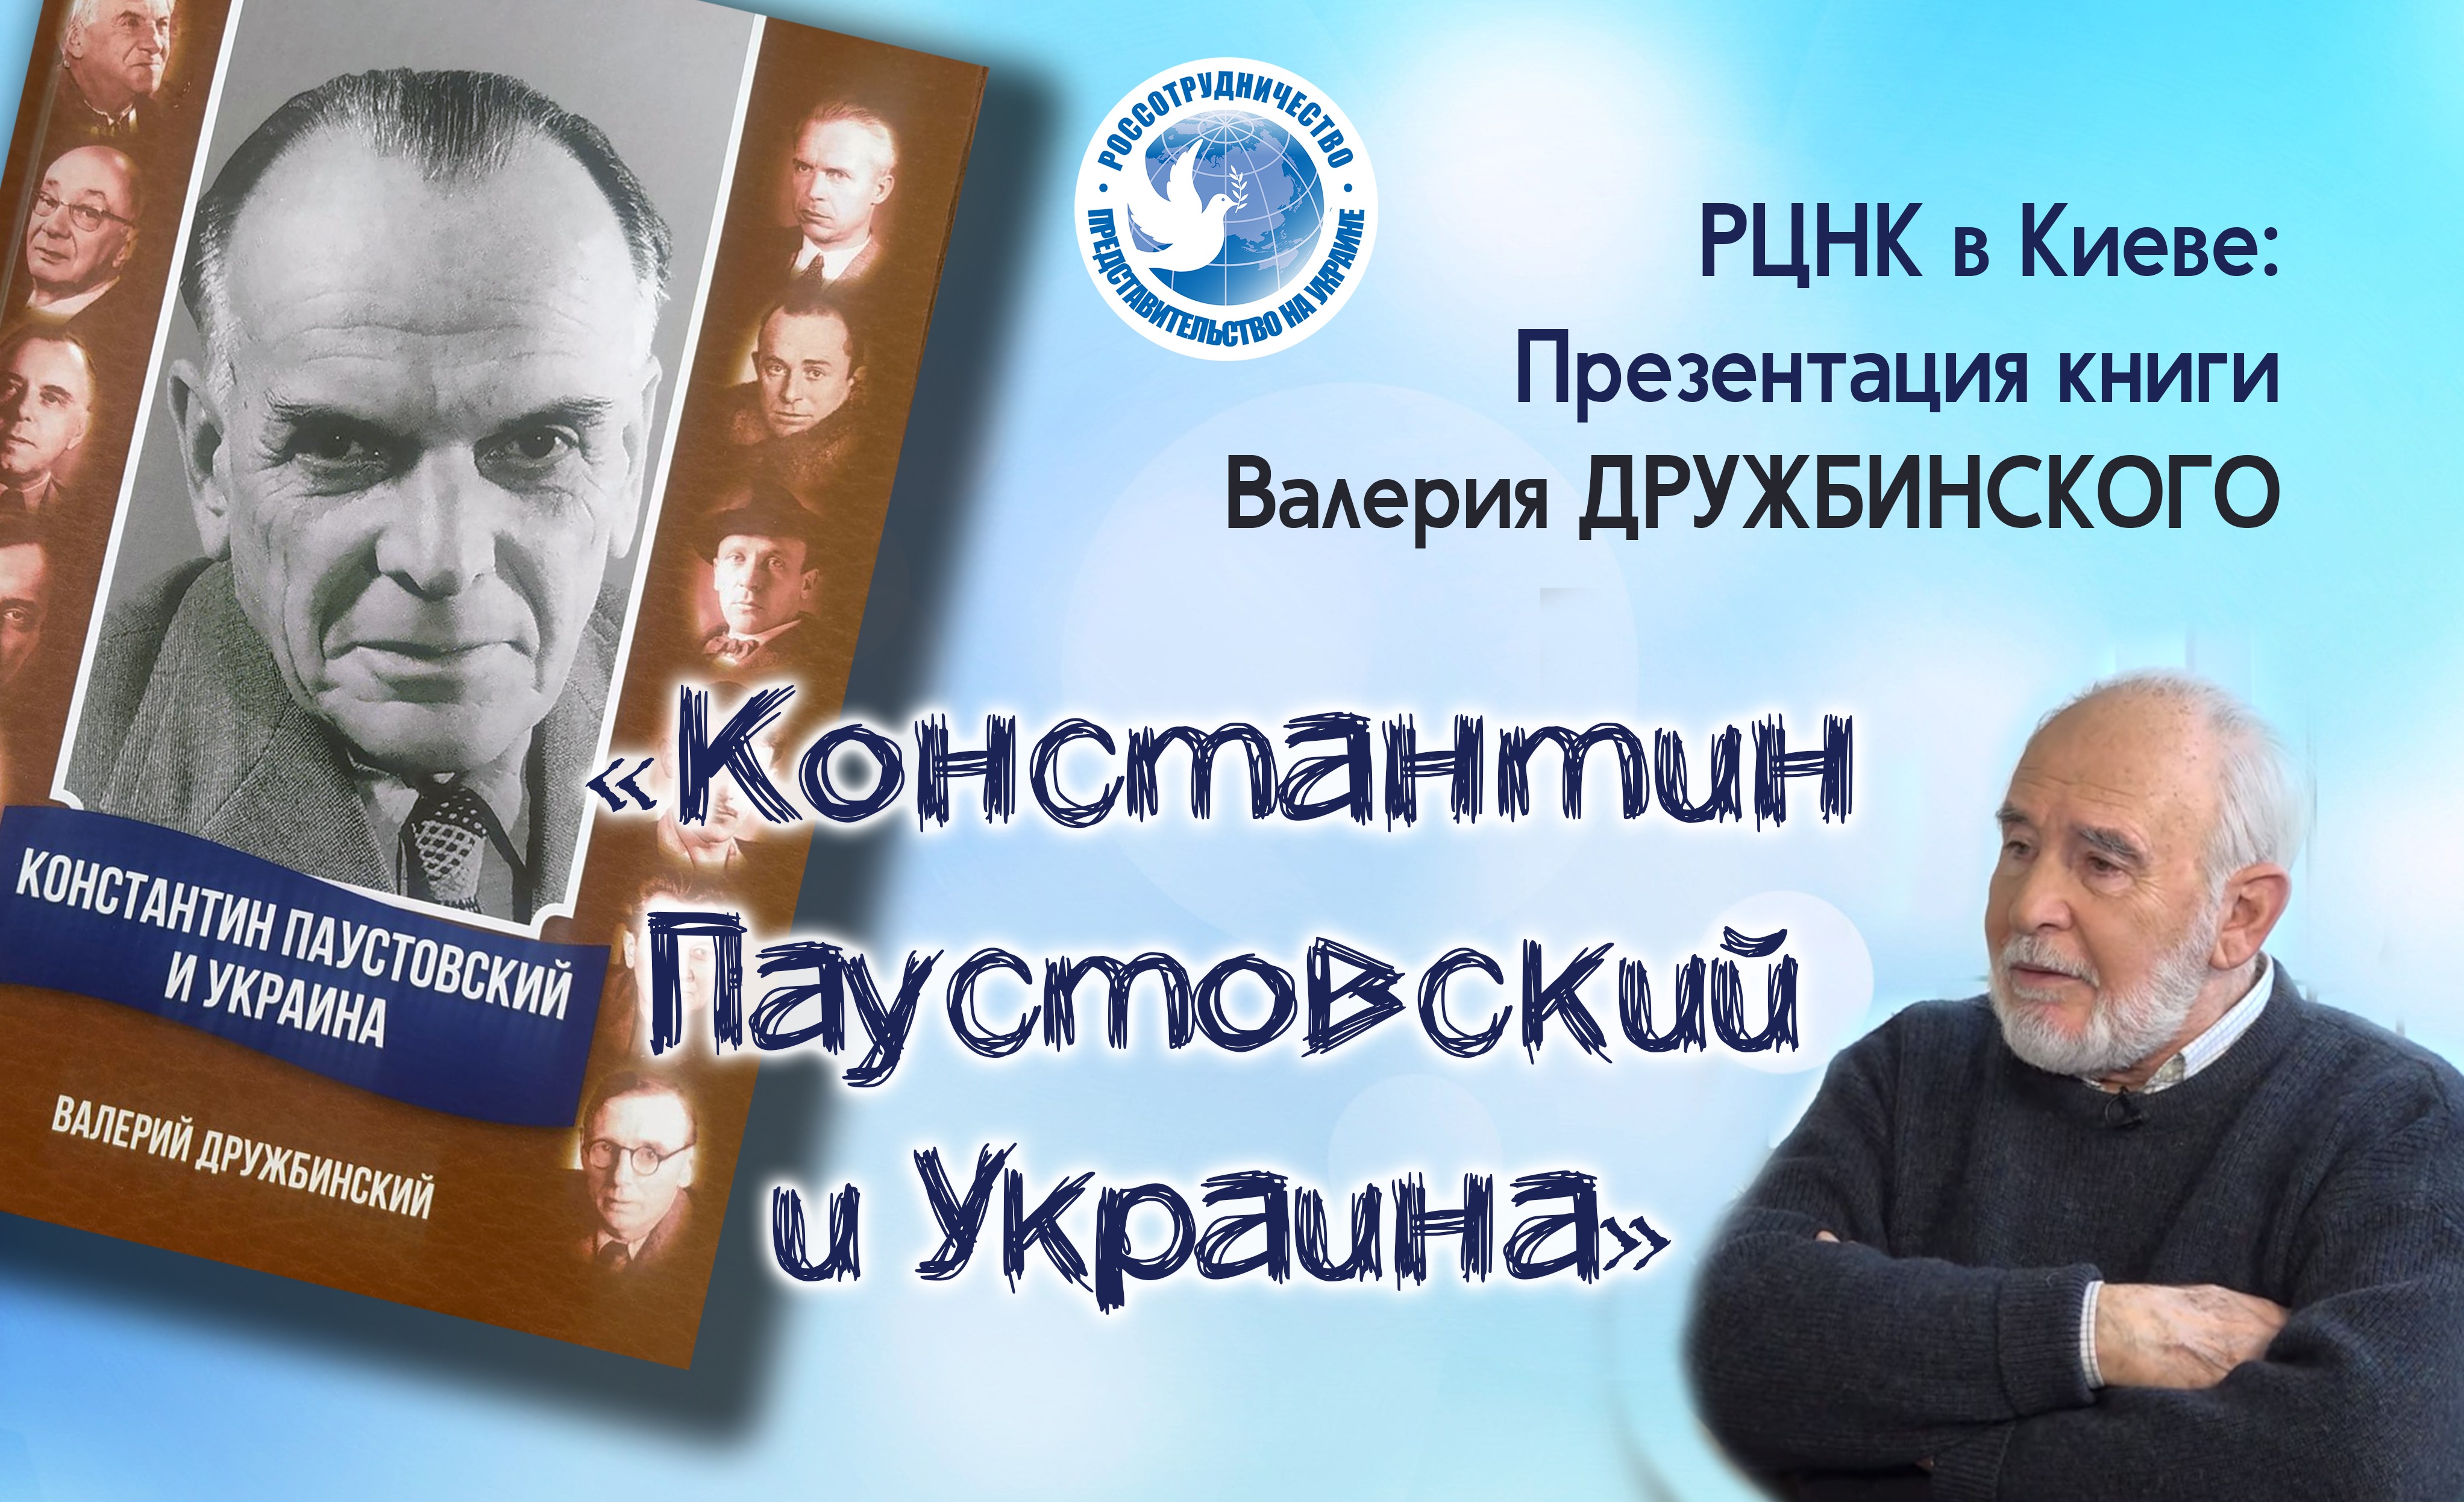 В РЦНК в Киеве презентовали книгу «Константин Паустовский и Украина»